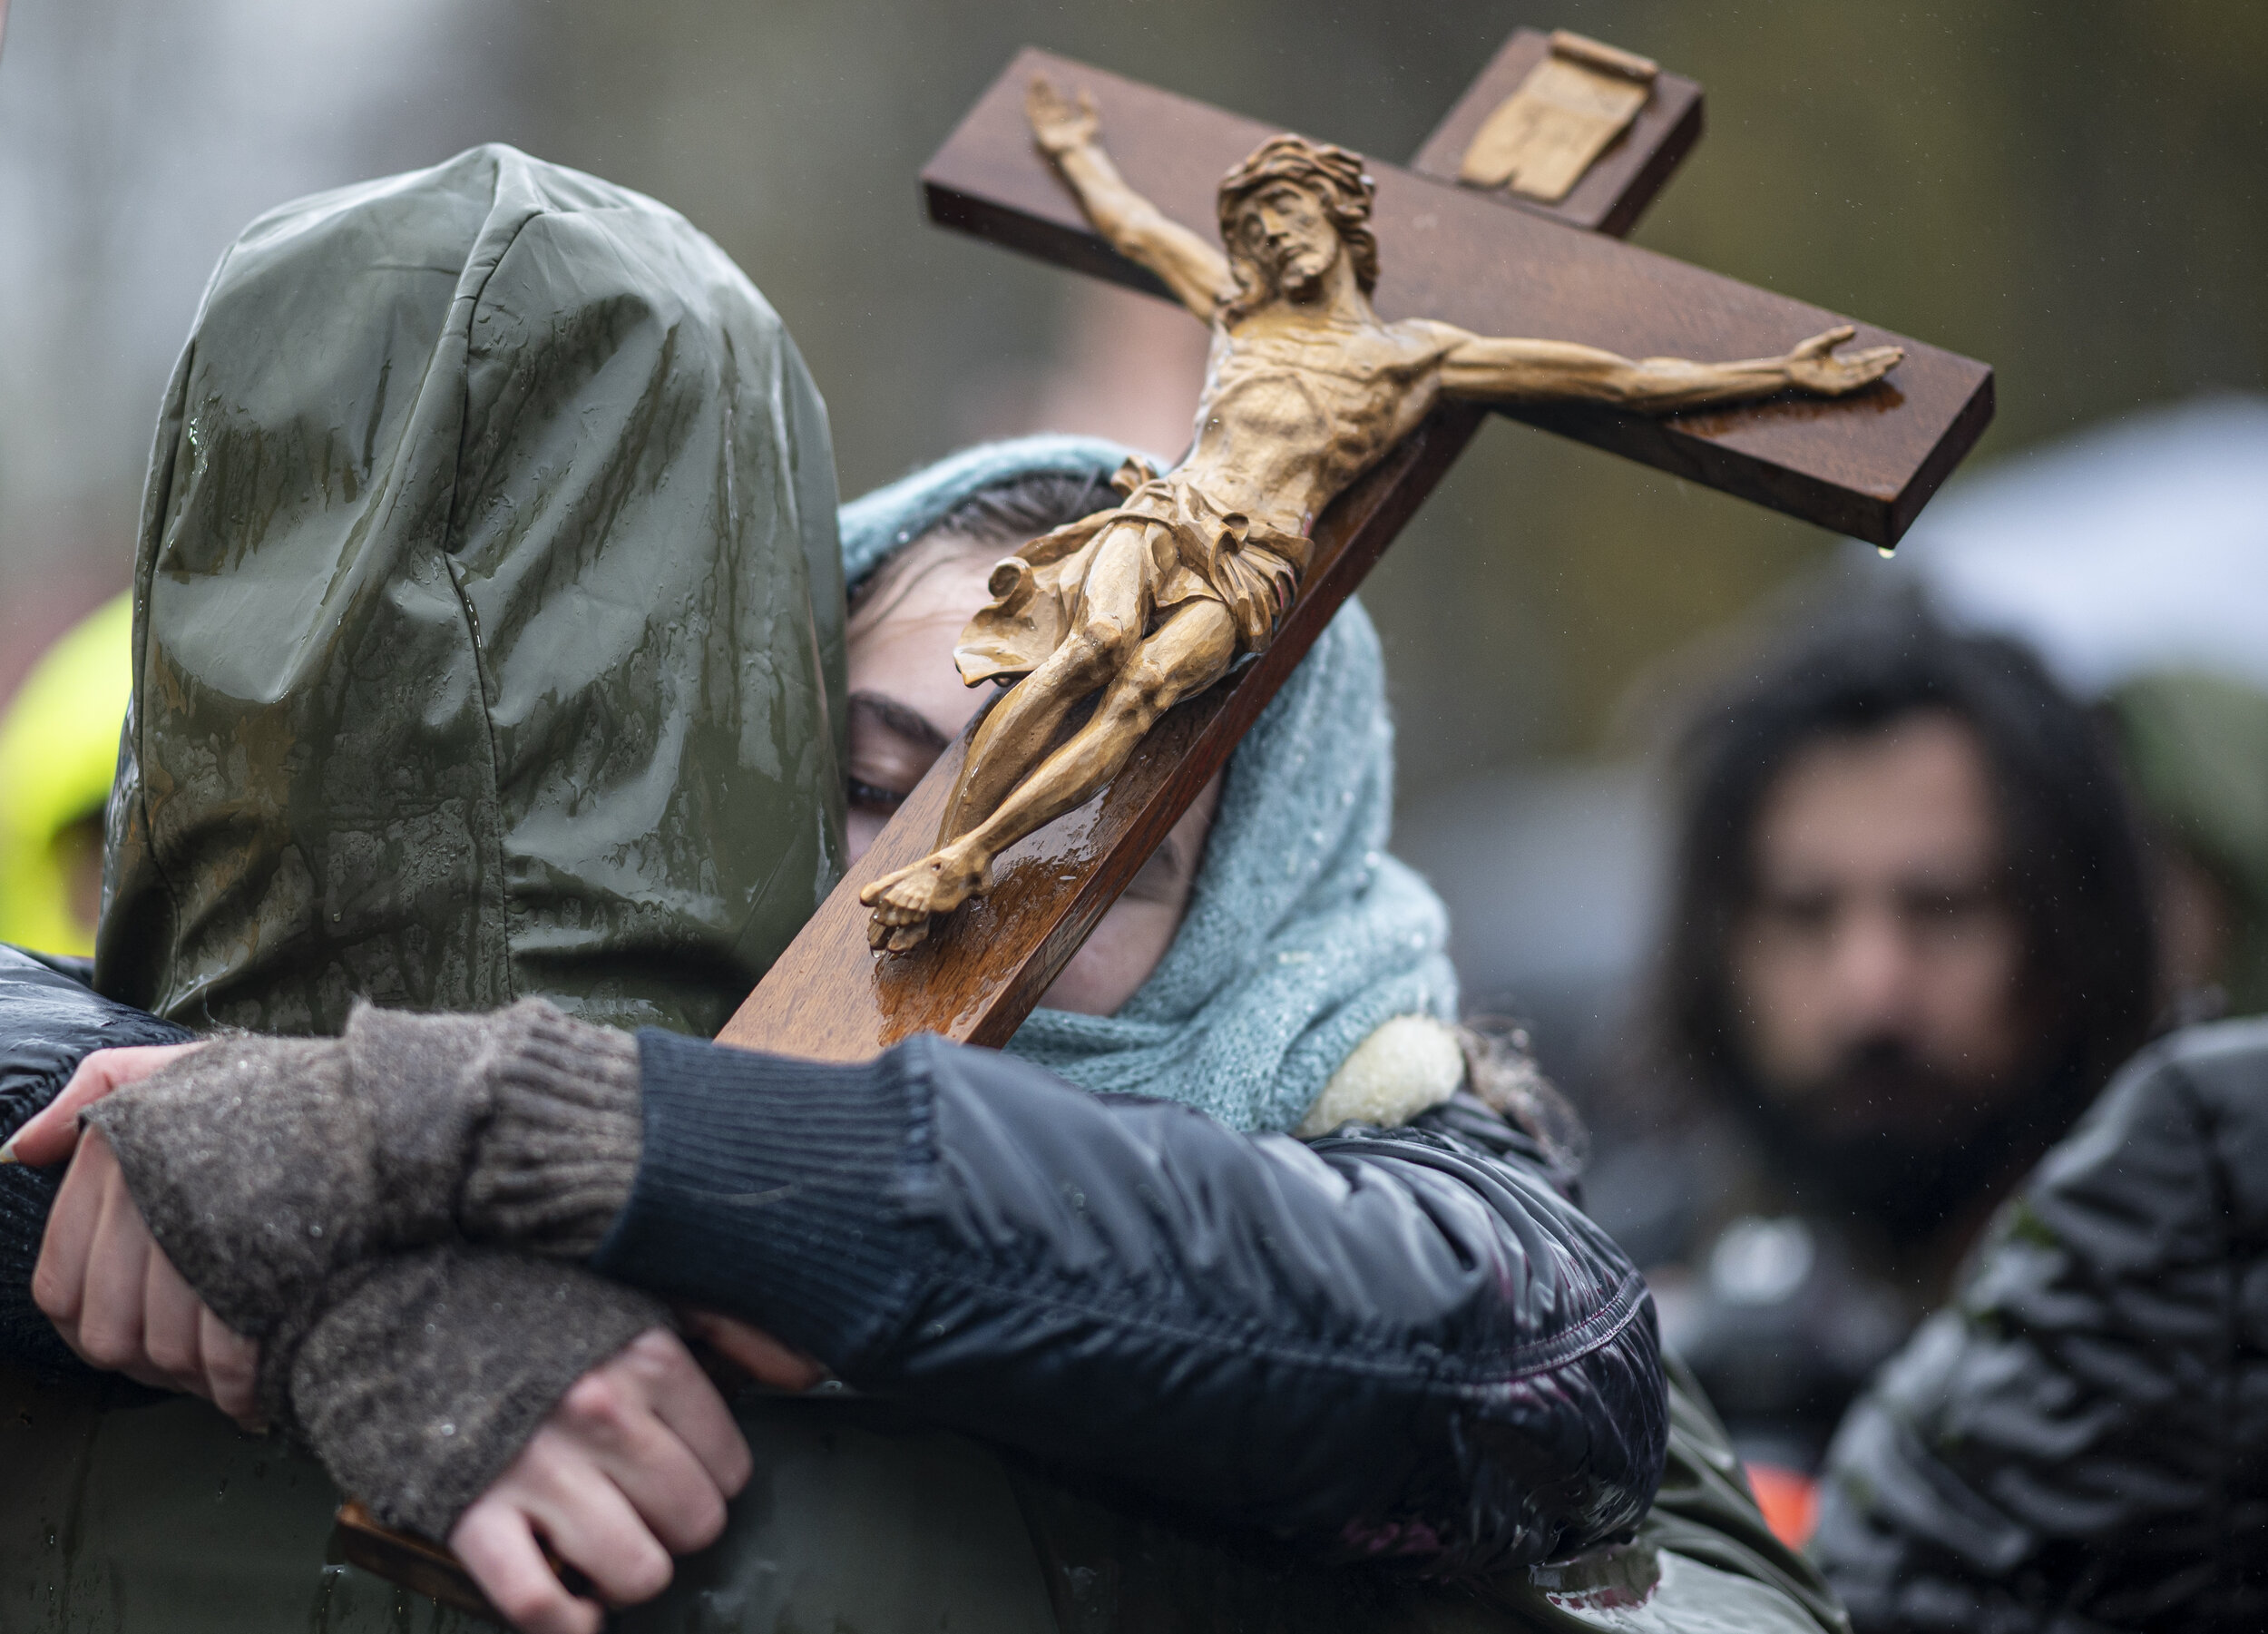  Auf einer Demonstration gegen Corona-Einschränkungen hält eine Frau ein Kreuz in der Hand, während sie ihre Begleitung umarmt. 